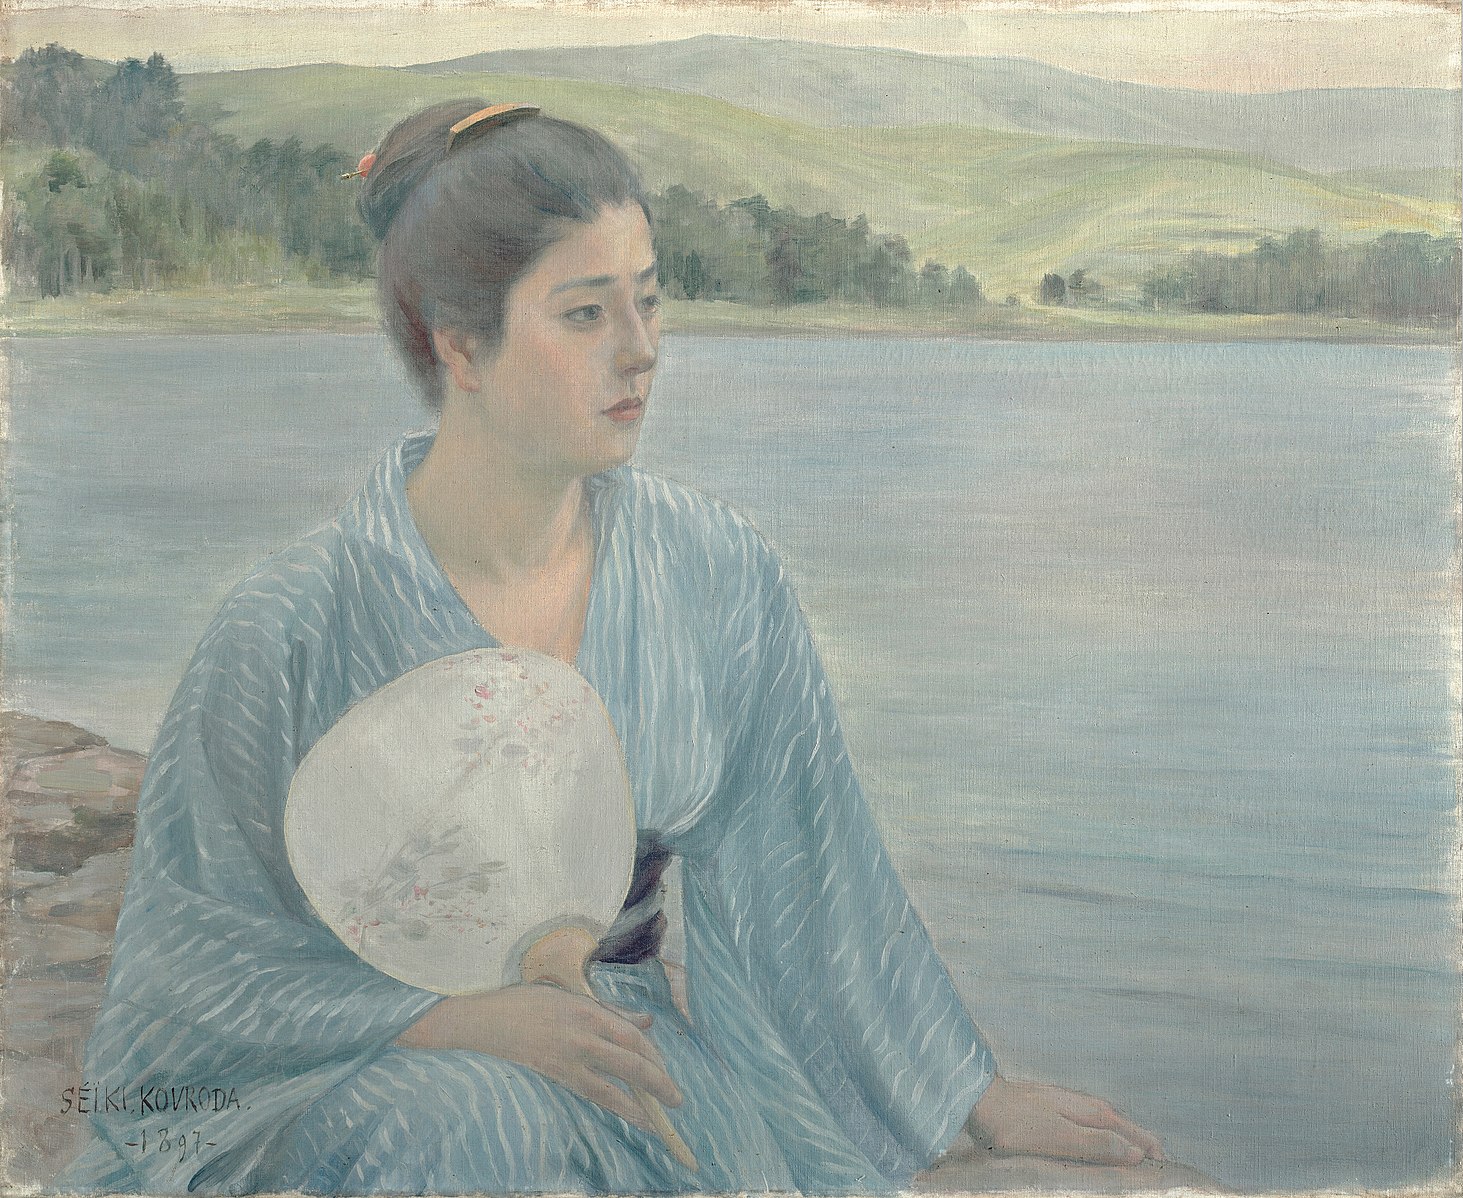 Mujer en túnica azul sosteniendo un abanico sentado junto a un lago